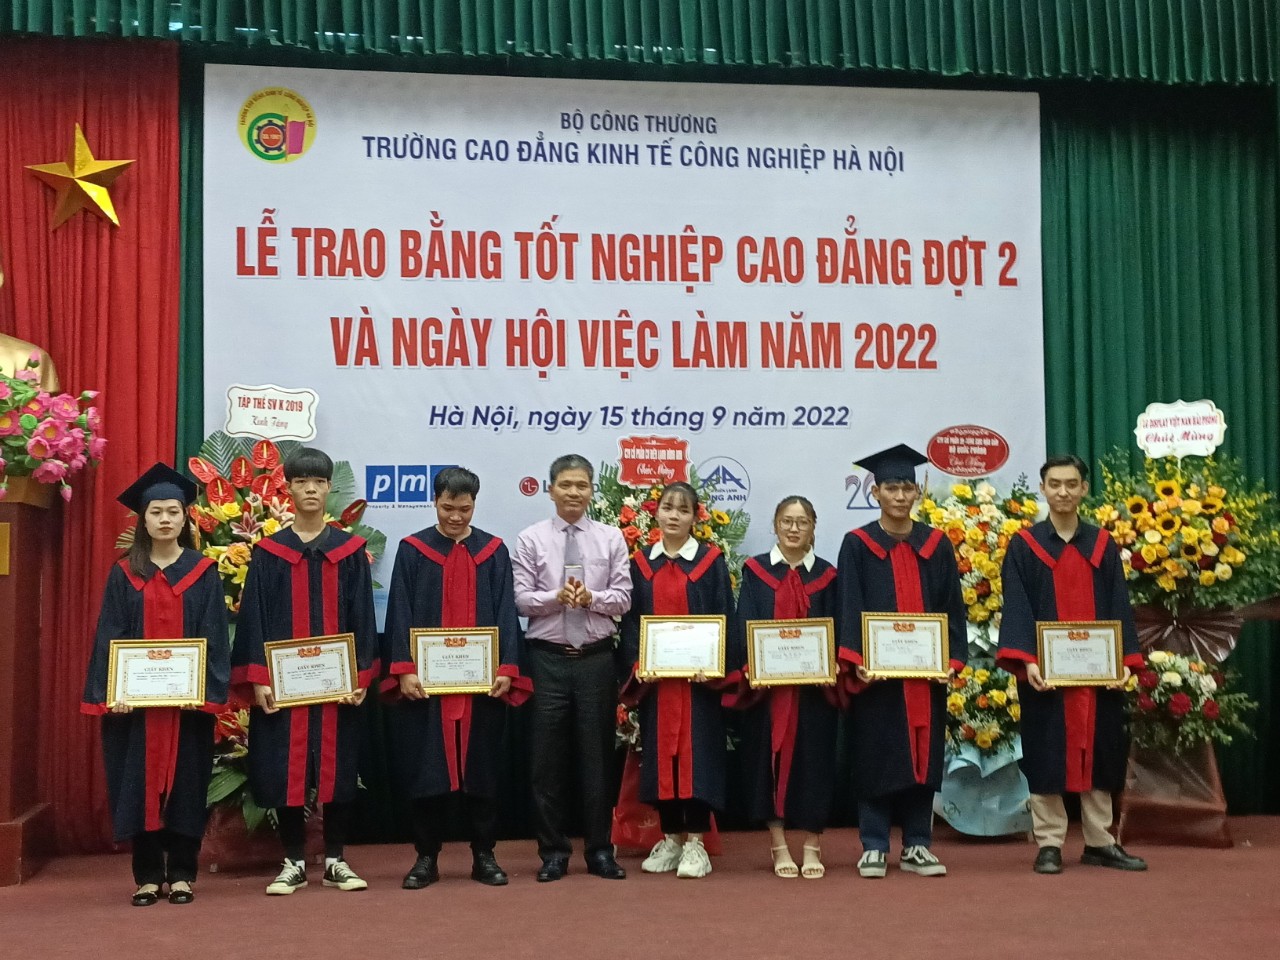 Tiến sĩ Đồng Trung Chính - Hiệu trưởng nhà trường lên trao danh hiệu sinh viên xuất sắc trong 3 năm học làm động lực cho các em bước vào hành trình mới. 